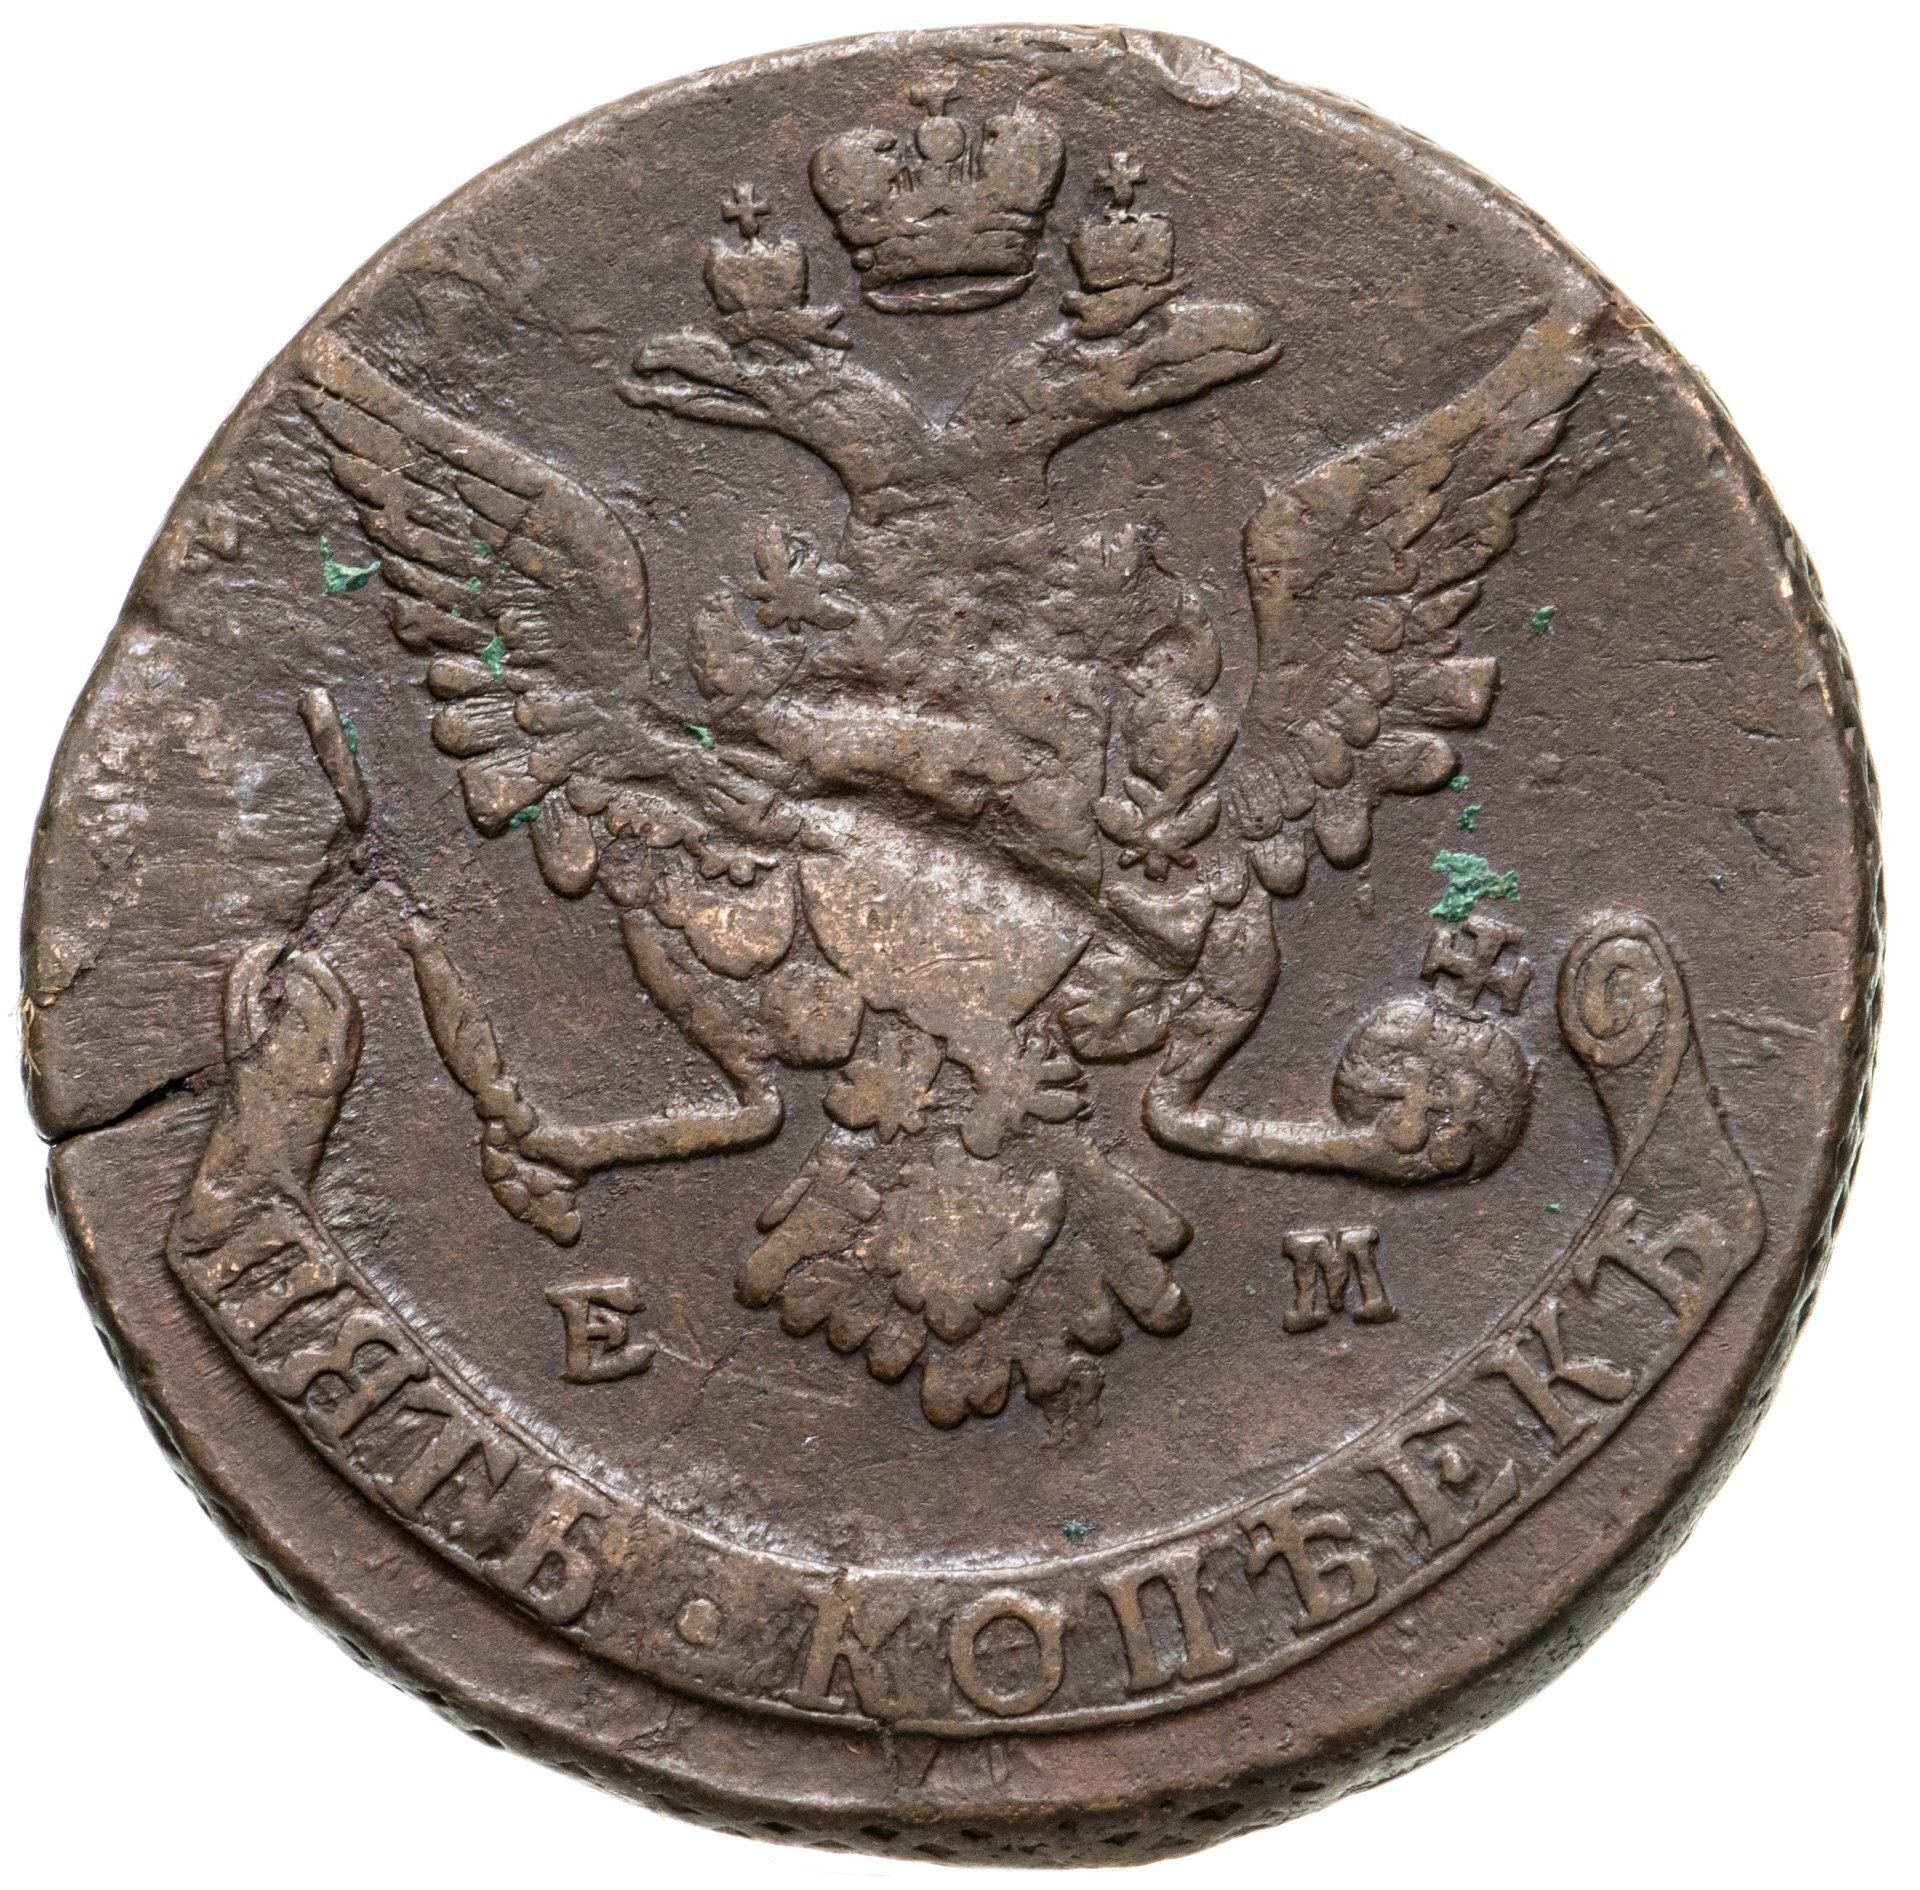 Монета екатерины 5 копеек. Монеты Екатерины 2 5 копеек. 5 Копеек Екатерины 2. Золотые монеты Екатерины 2 5 копеек 1791.